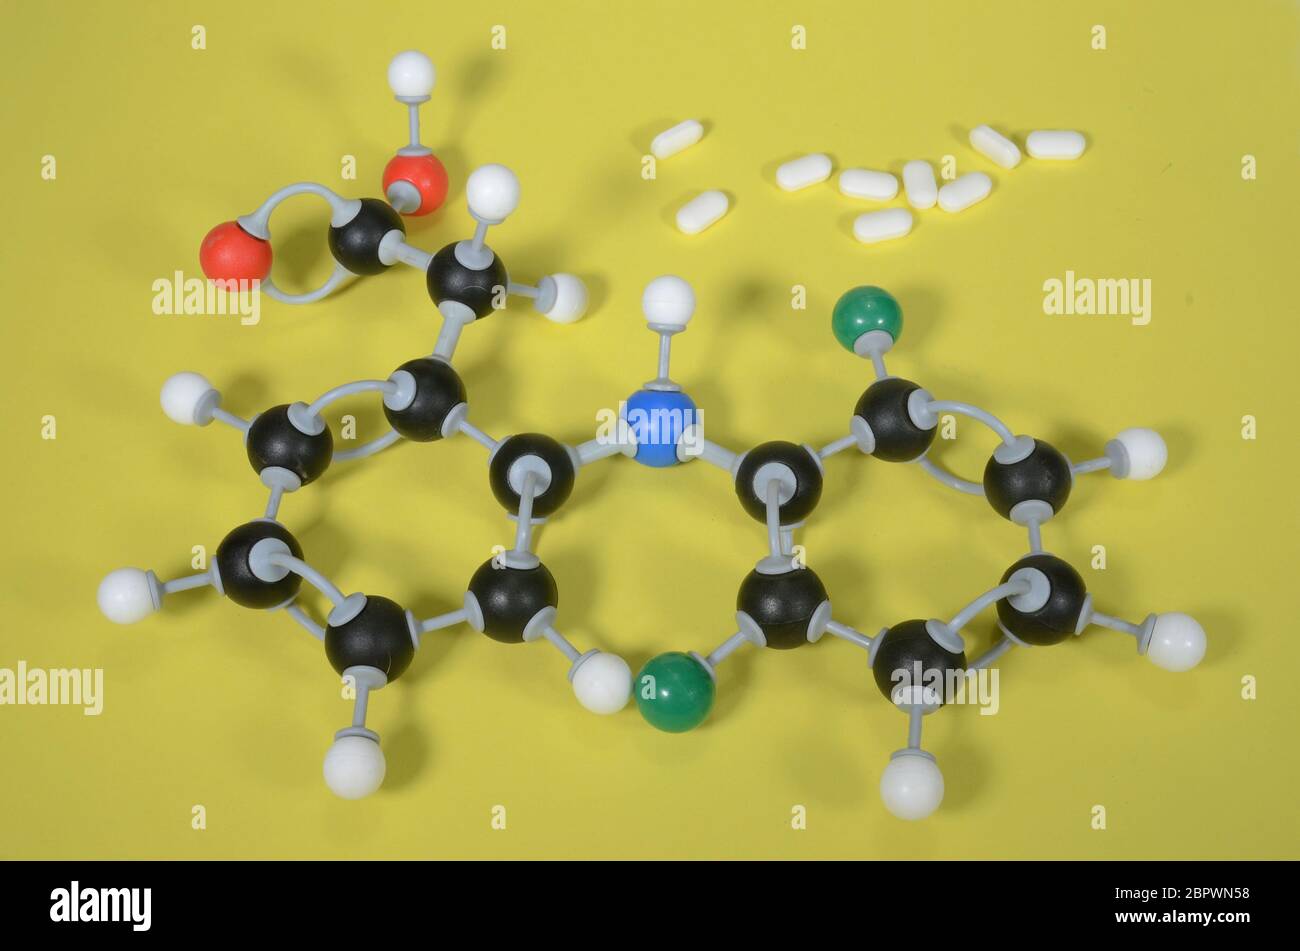 Modello molecolare di Diclofenac, il principio attivo in molti antidolorifici. Il bianco è idrogeno, il nero è carbonio, il rosso è ossigeno, il verde è cloro e il blu Foto Stock